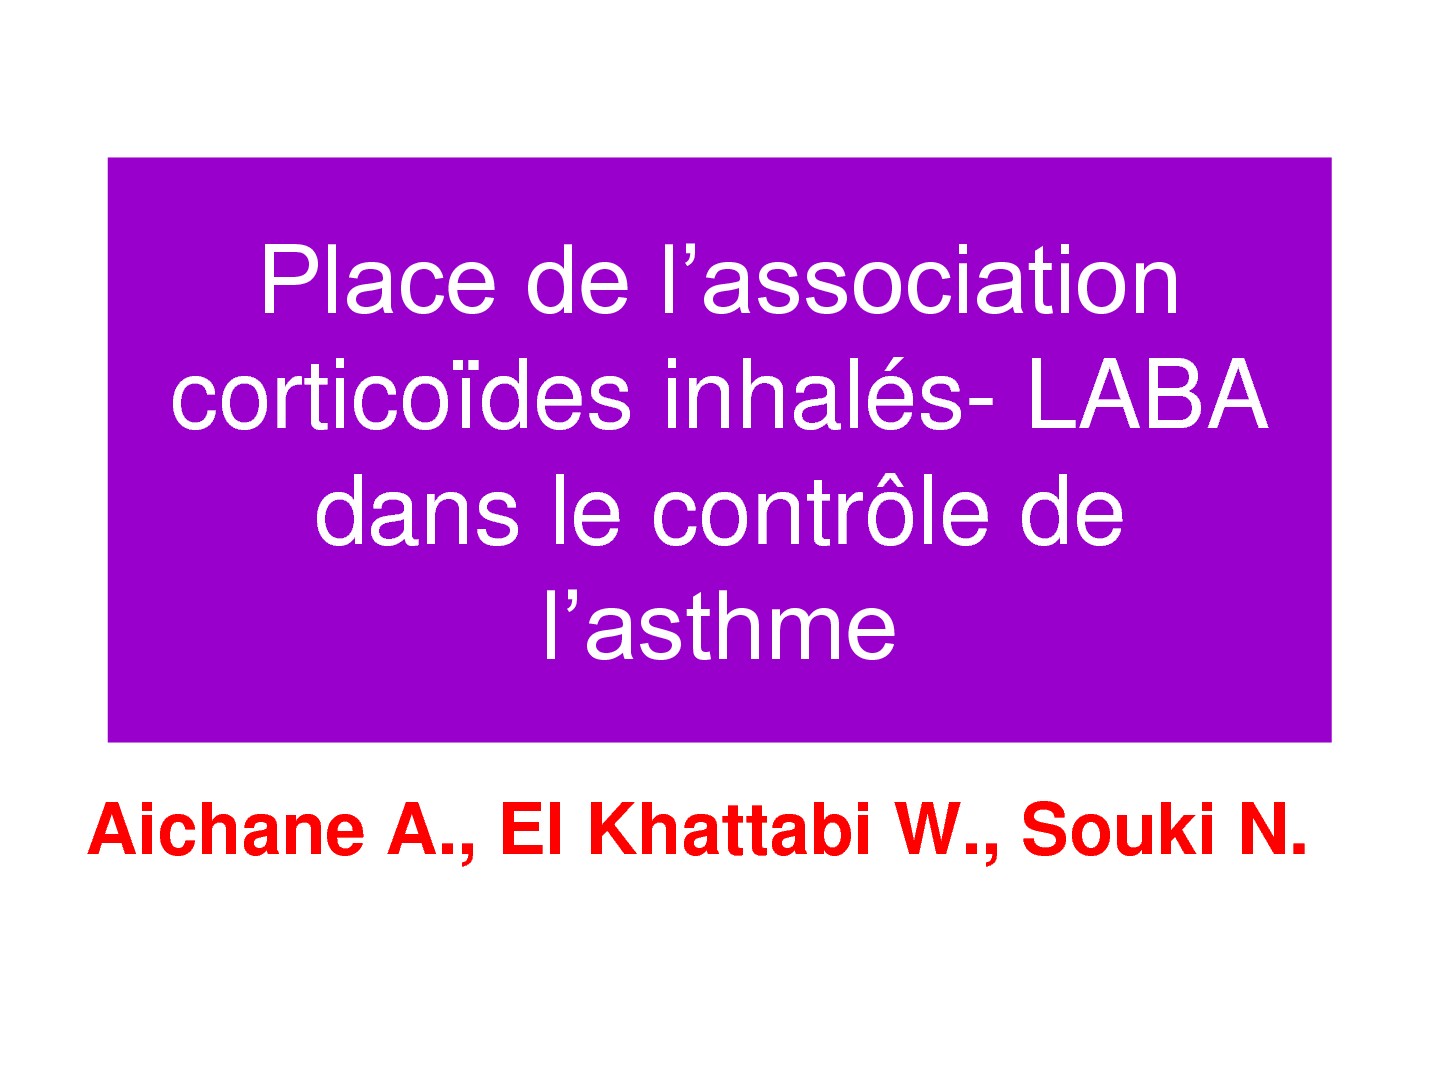 Place de l'association corticoïdes inhalés - LABA dans le contrôle de l'asthme. Aichane A., El Khattabi W., Souki N.